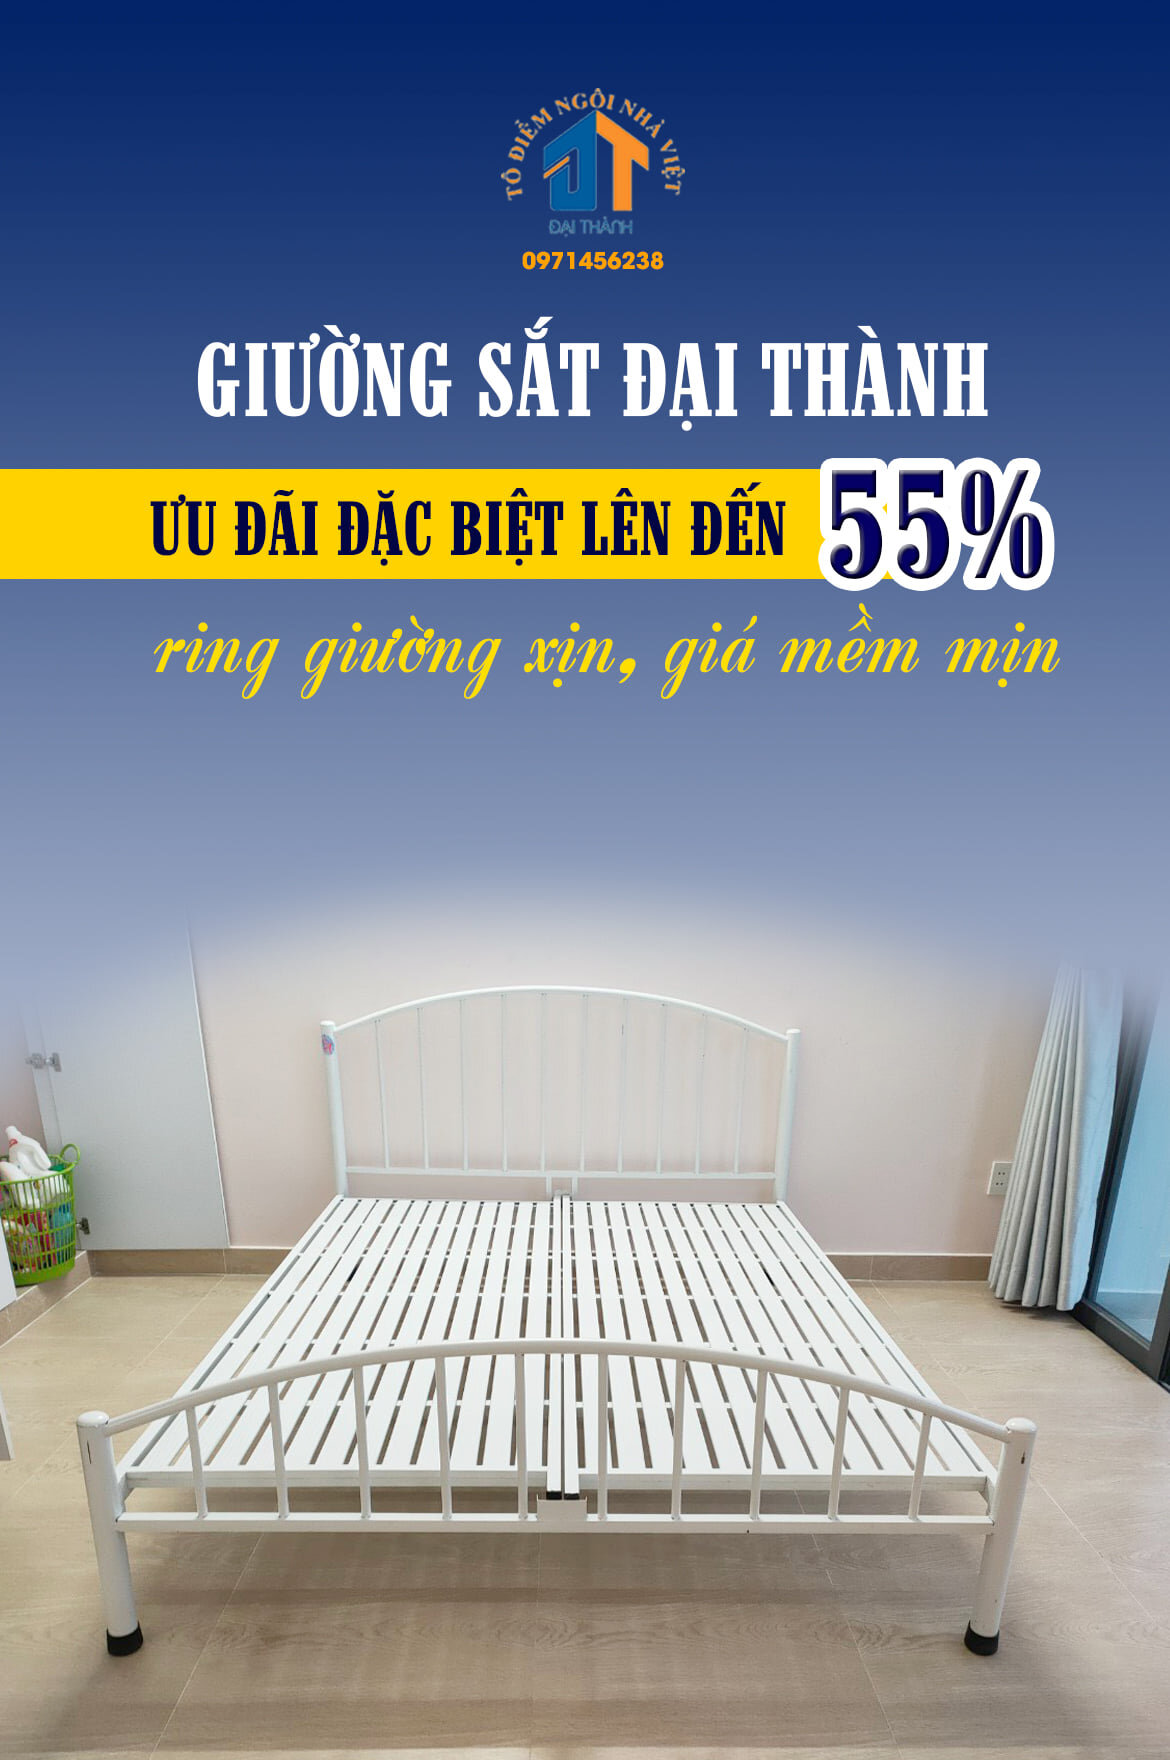 Tủ sắt, giường sắt Đại Thành ưu đãi lên đến 55%